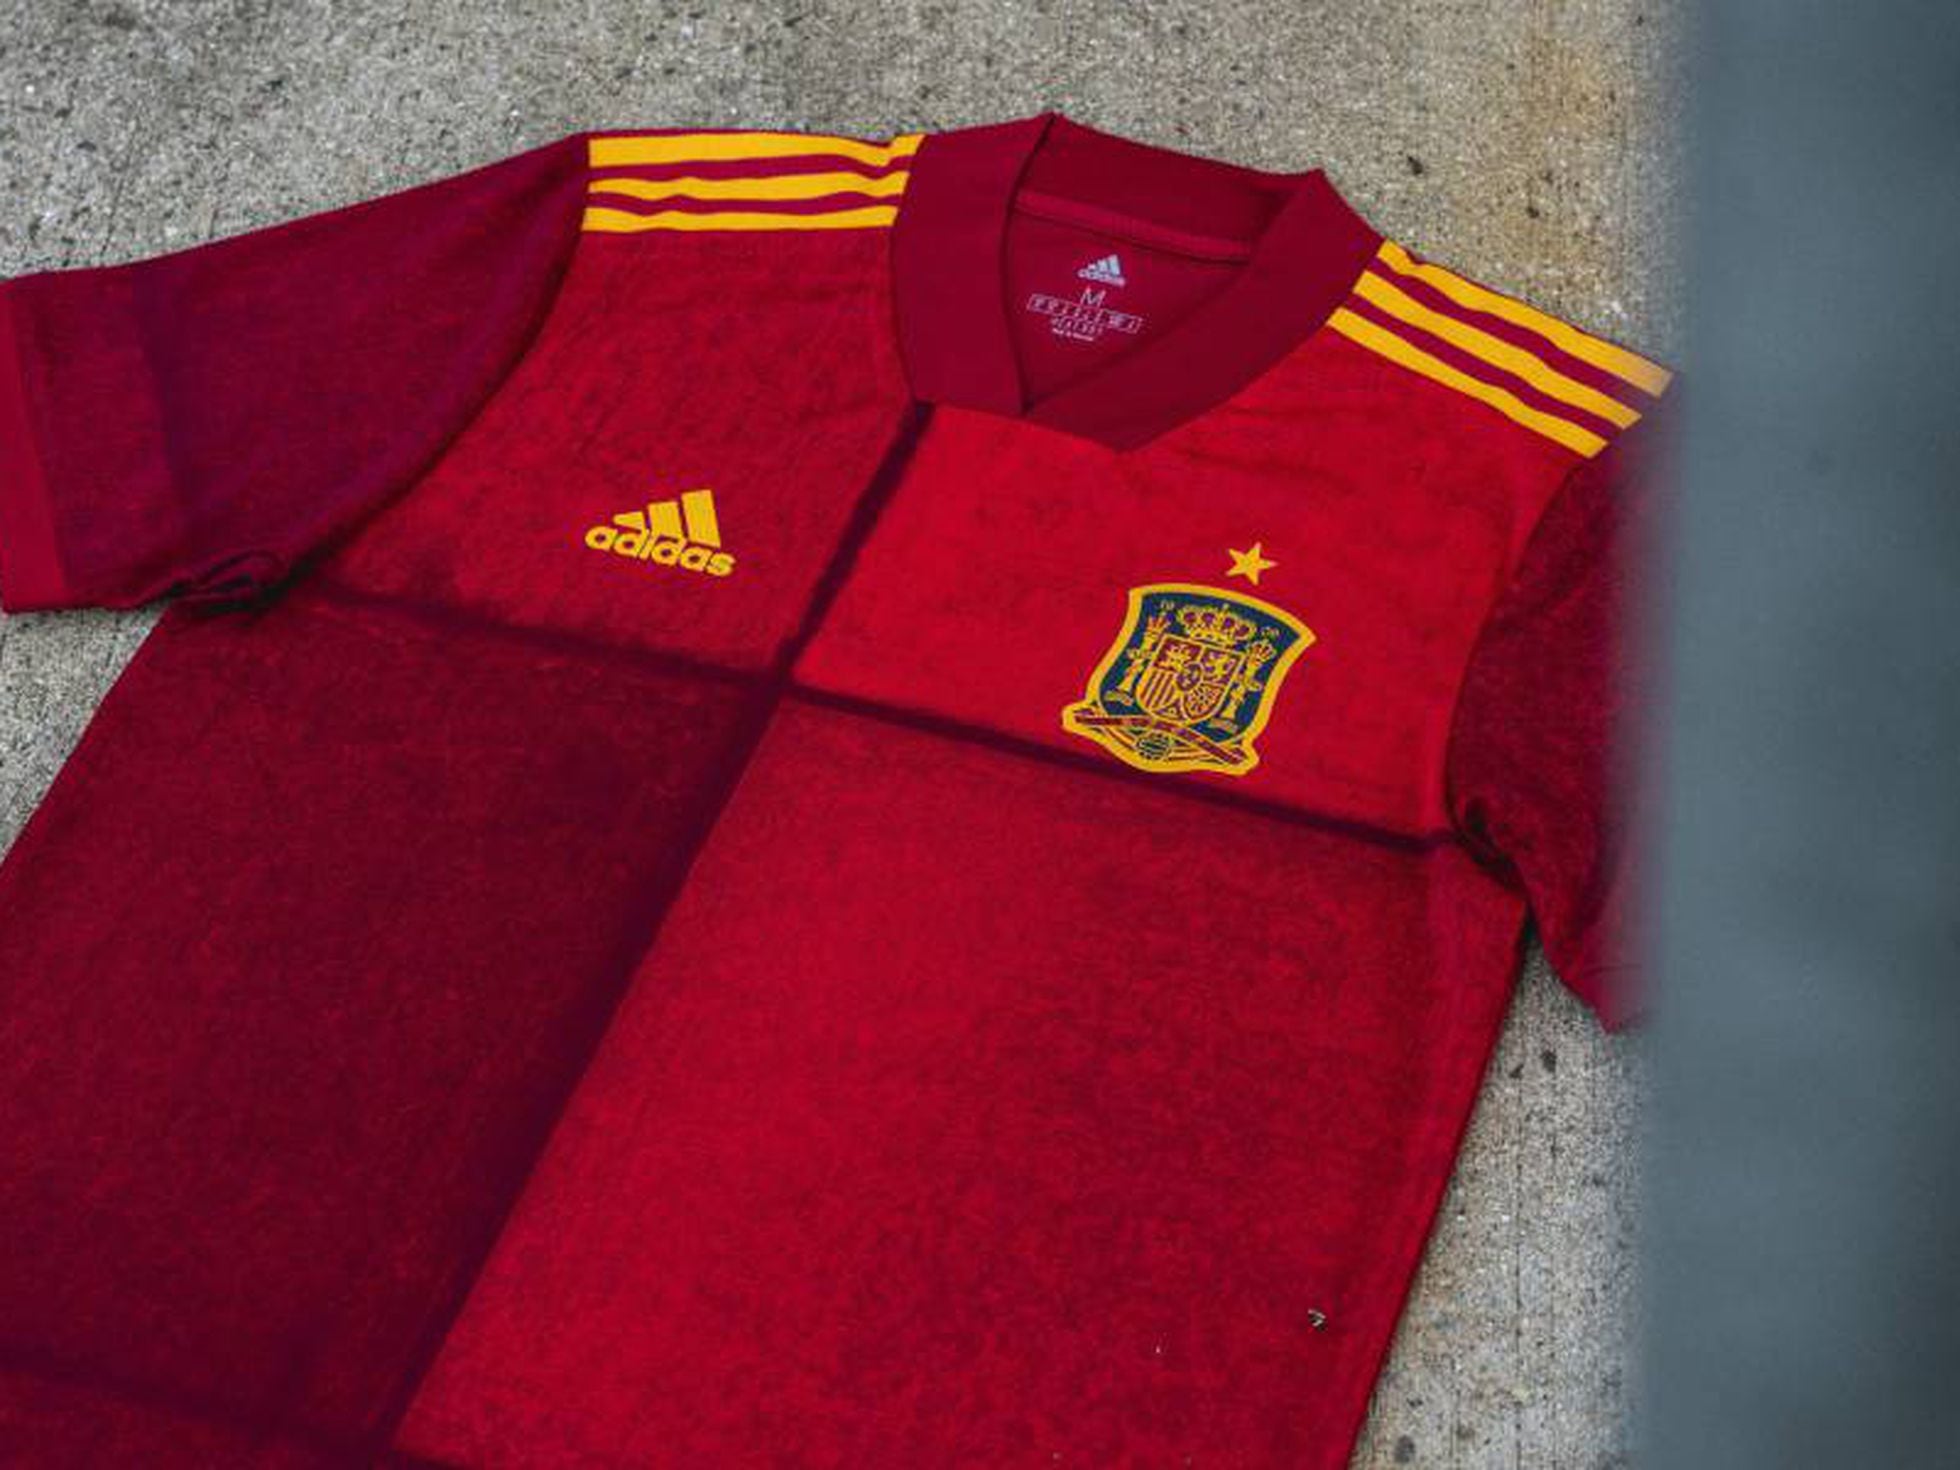 Colaborar con embrague menú España presenta su nueva camiseta para la Eurocopa 2020 | Deportes | EL PAÍS